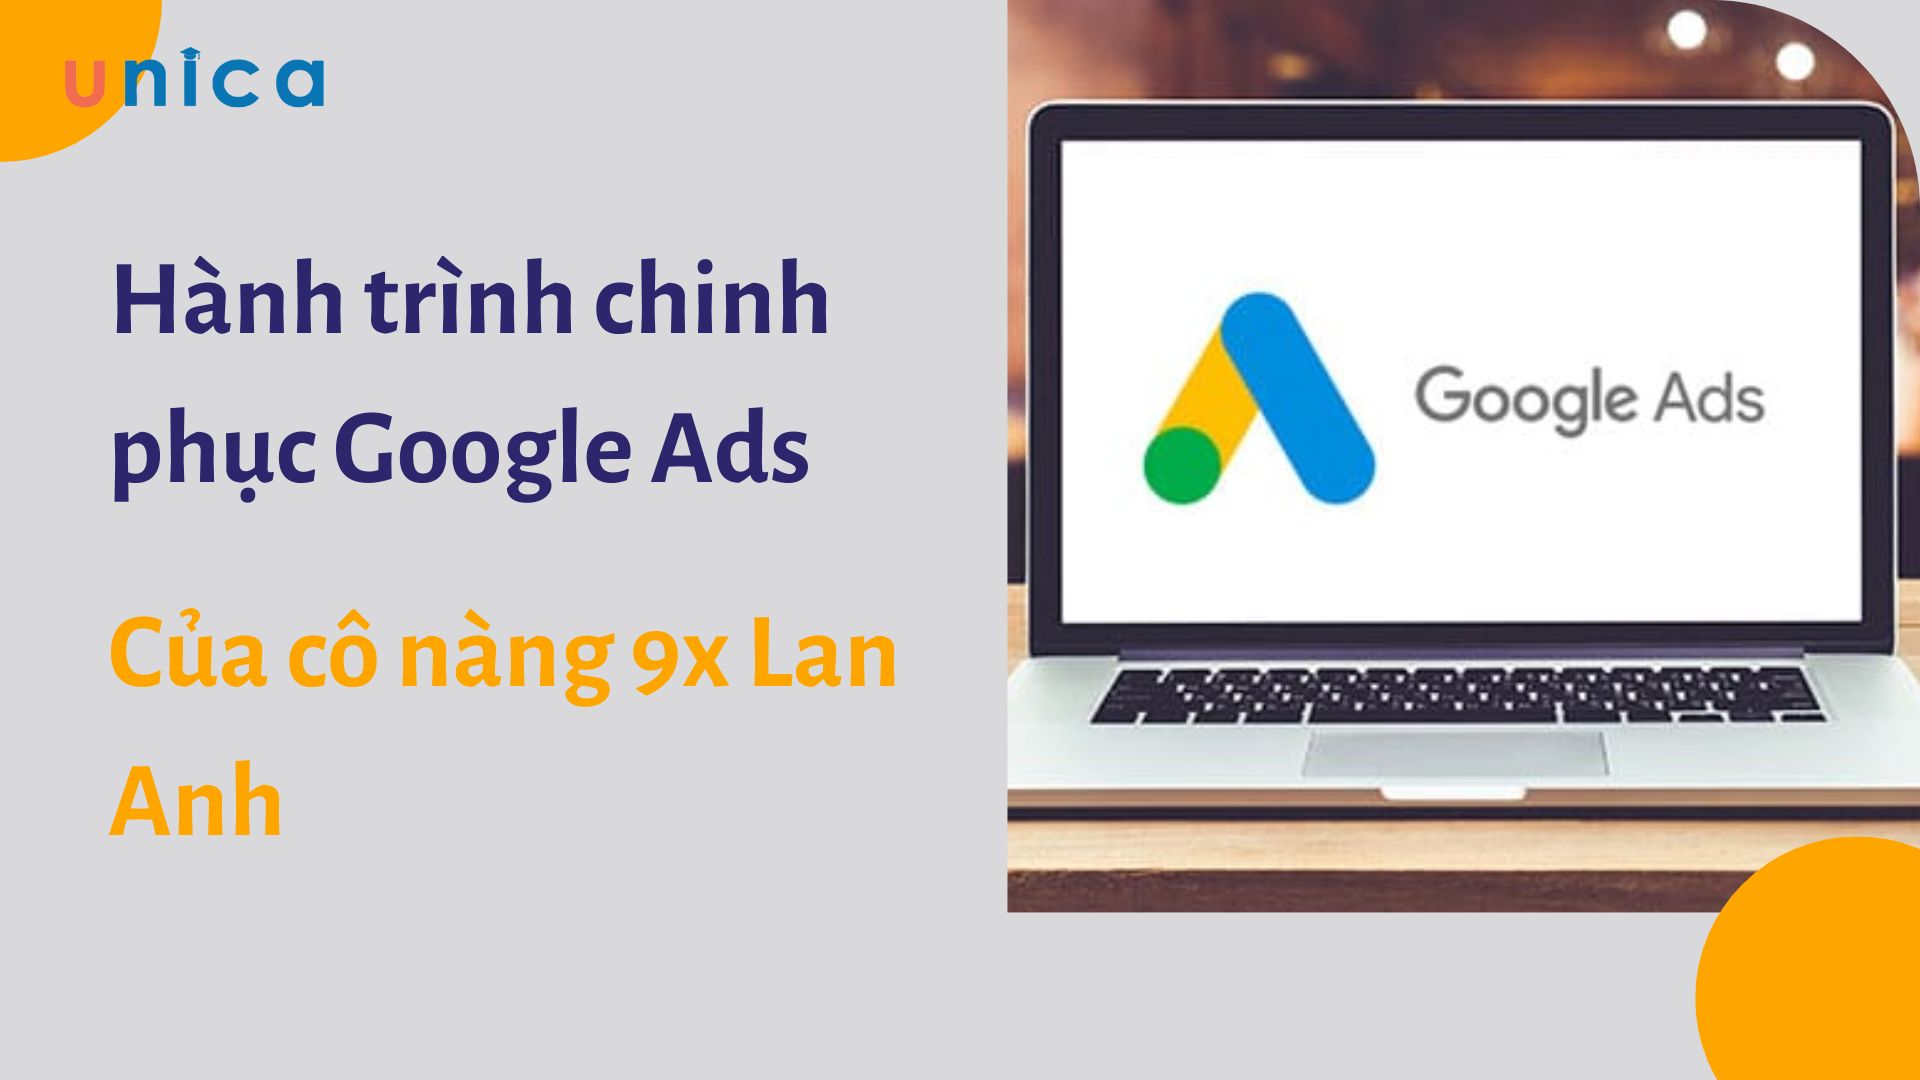 Hành trình chinh phục Google Ads của cô nàng 9x Lan Anh